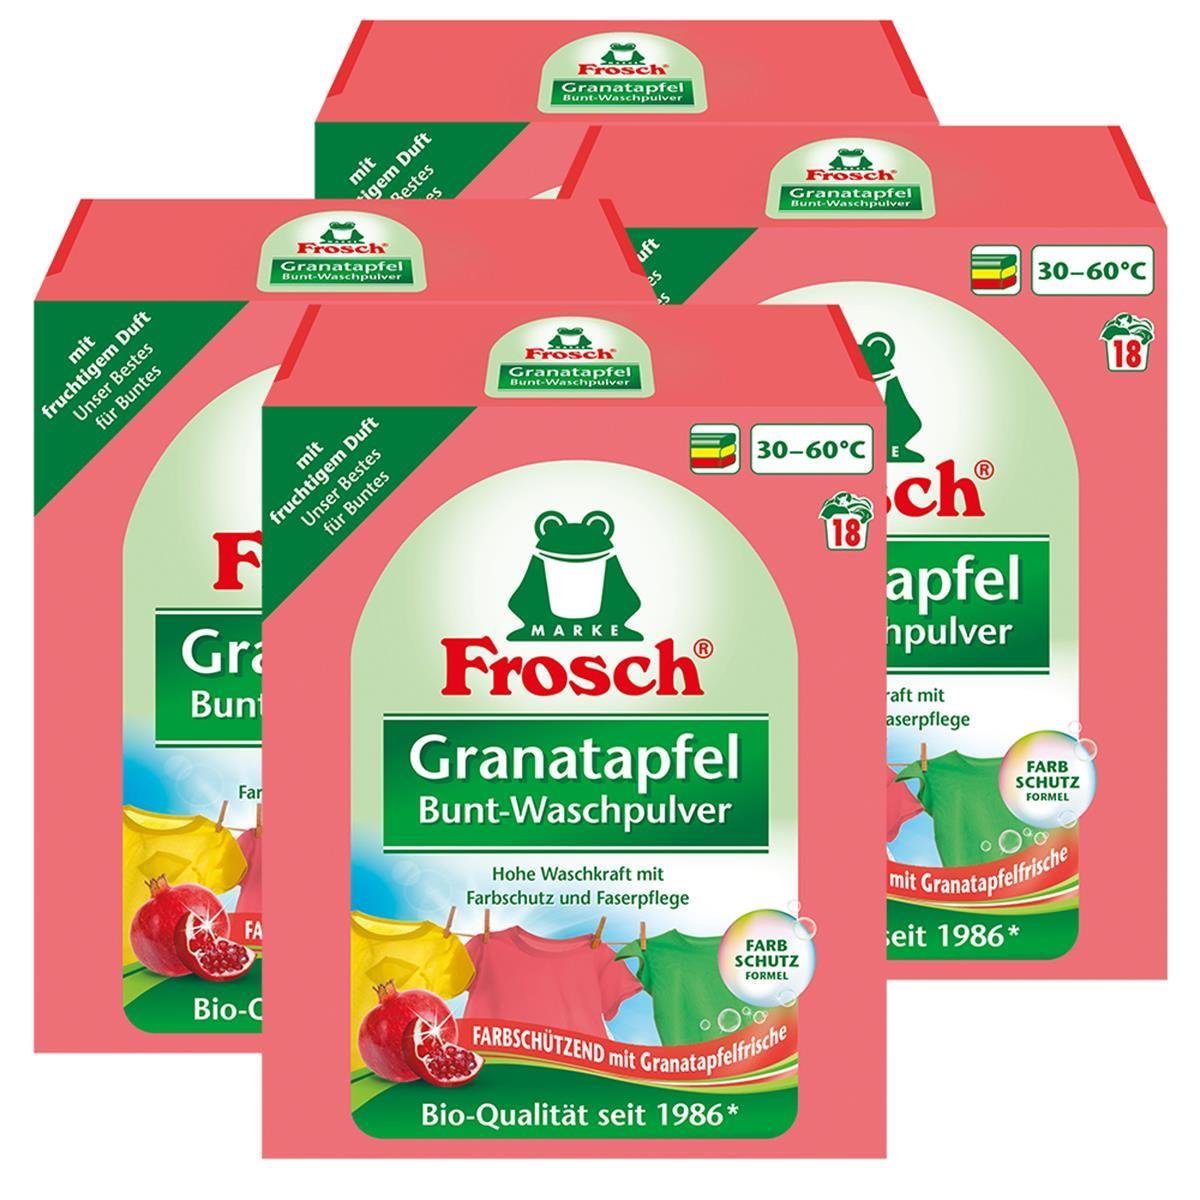 FROSCH Frosch Duft 1,35 Mit (4er fruchtigem Colorwaschmittel Bunt-Waschpulver kg - Granatapfel